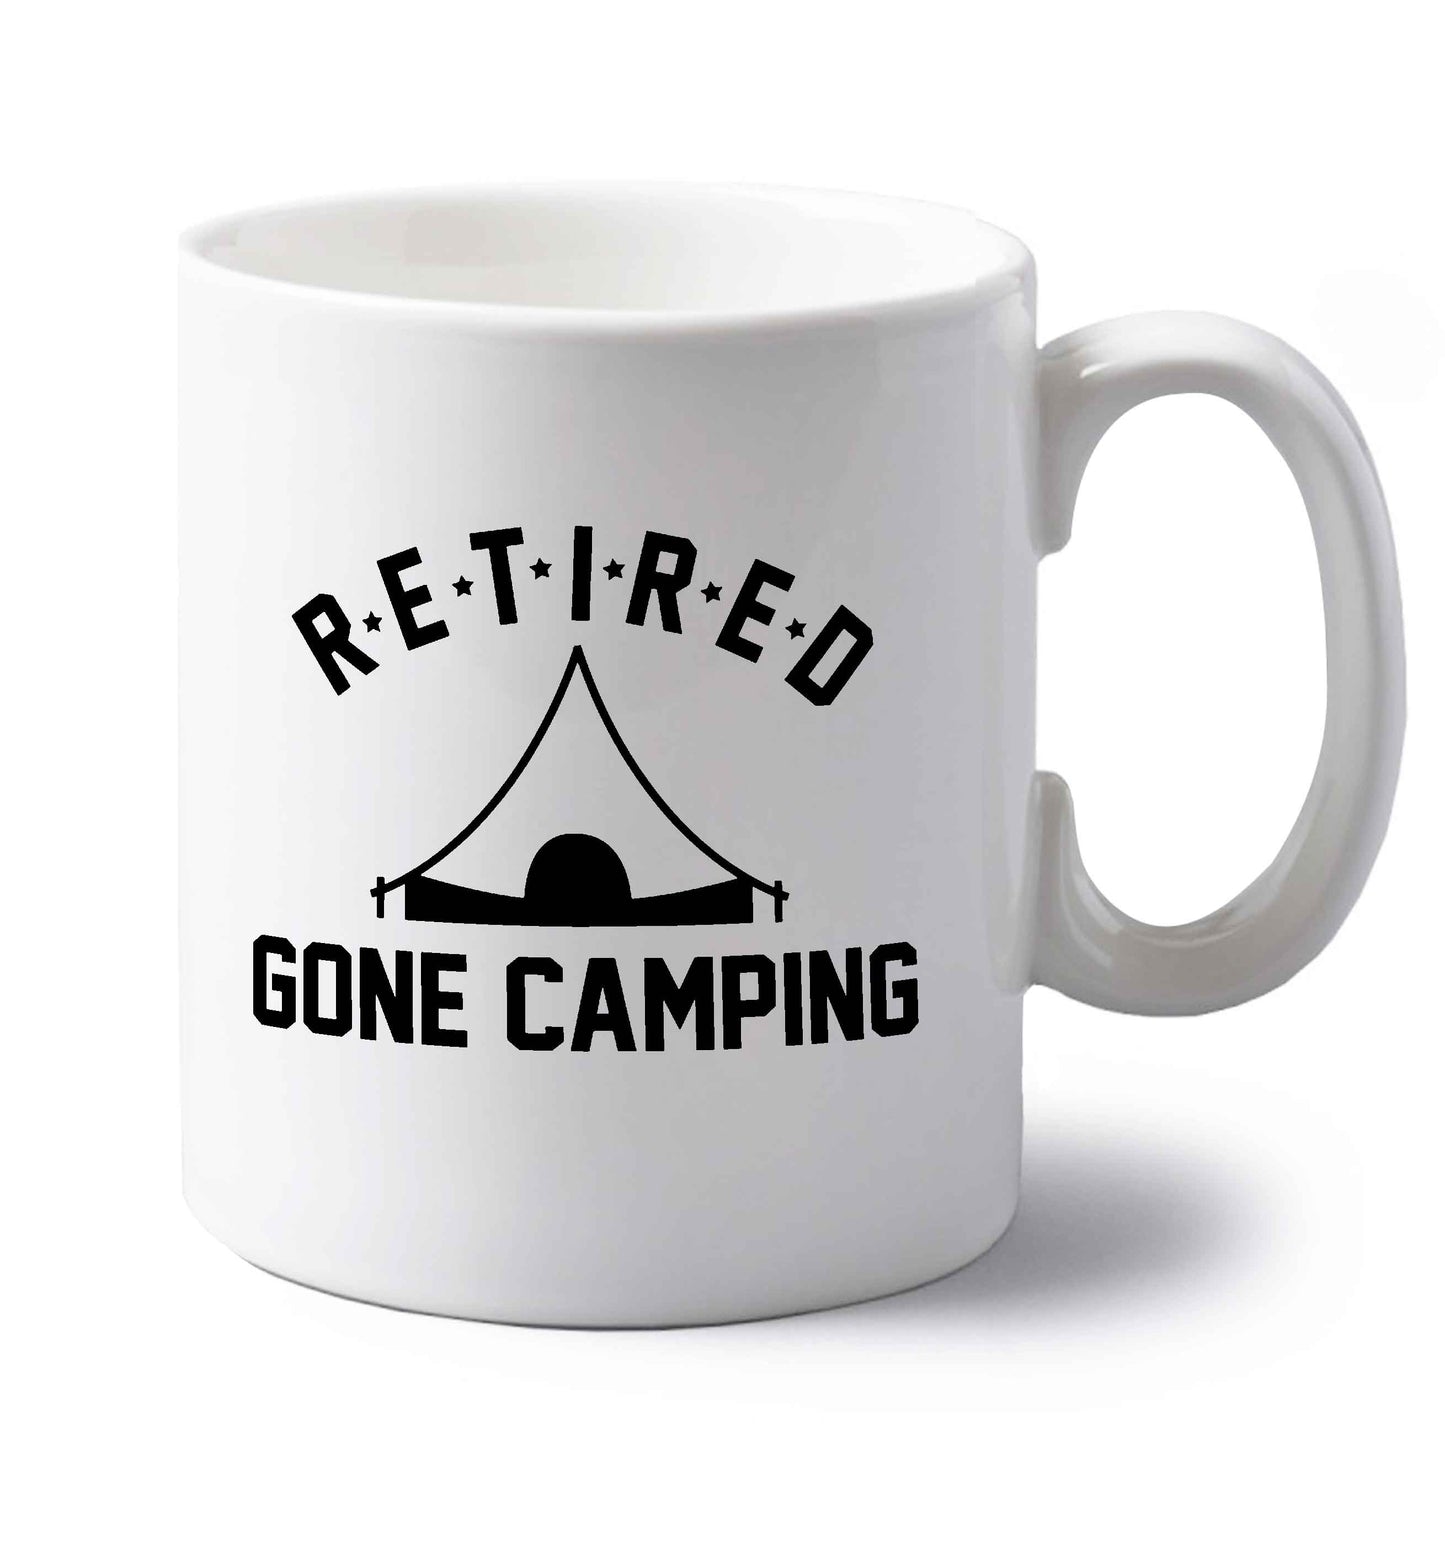 Retired gone camping left handed white ceramic mug 